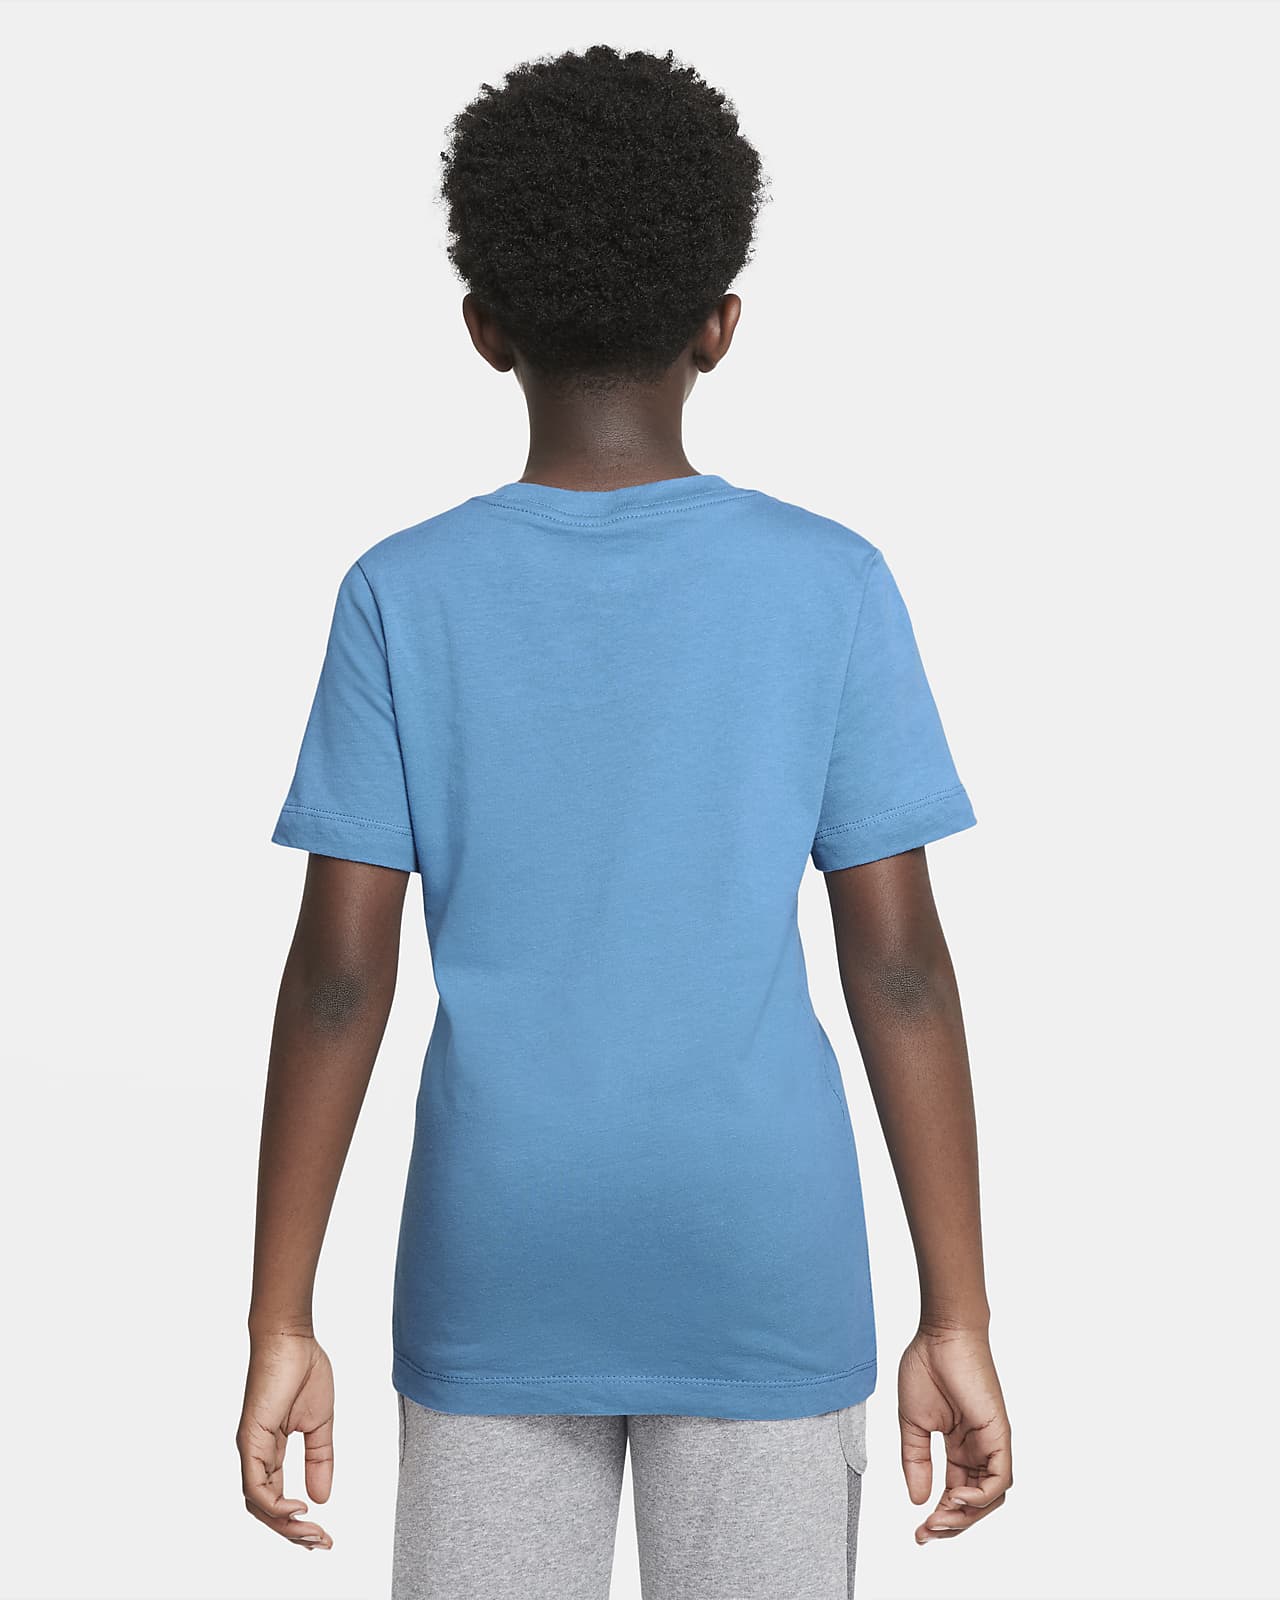 Nike Air Older Kids' (Boys') T-Shirt. Nike VN